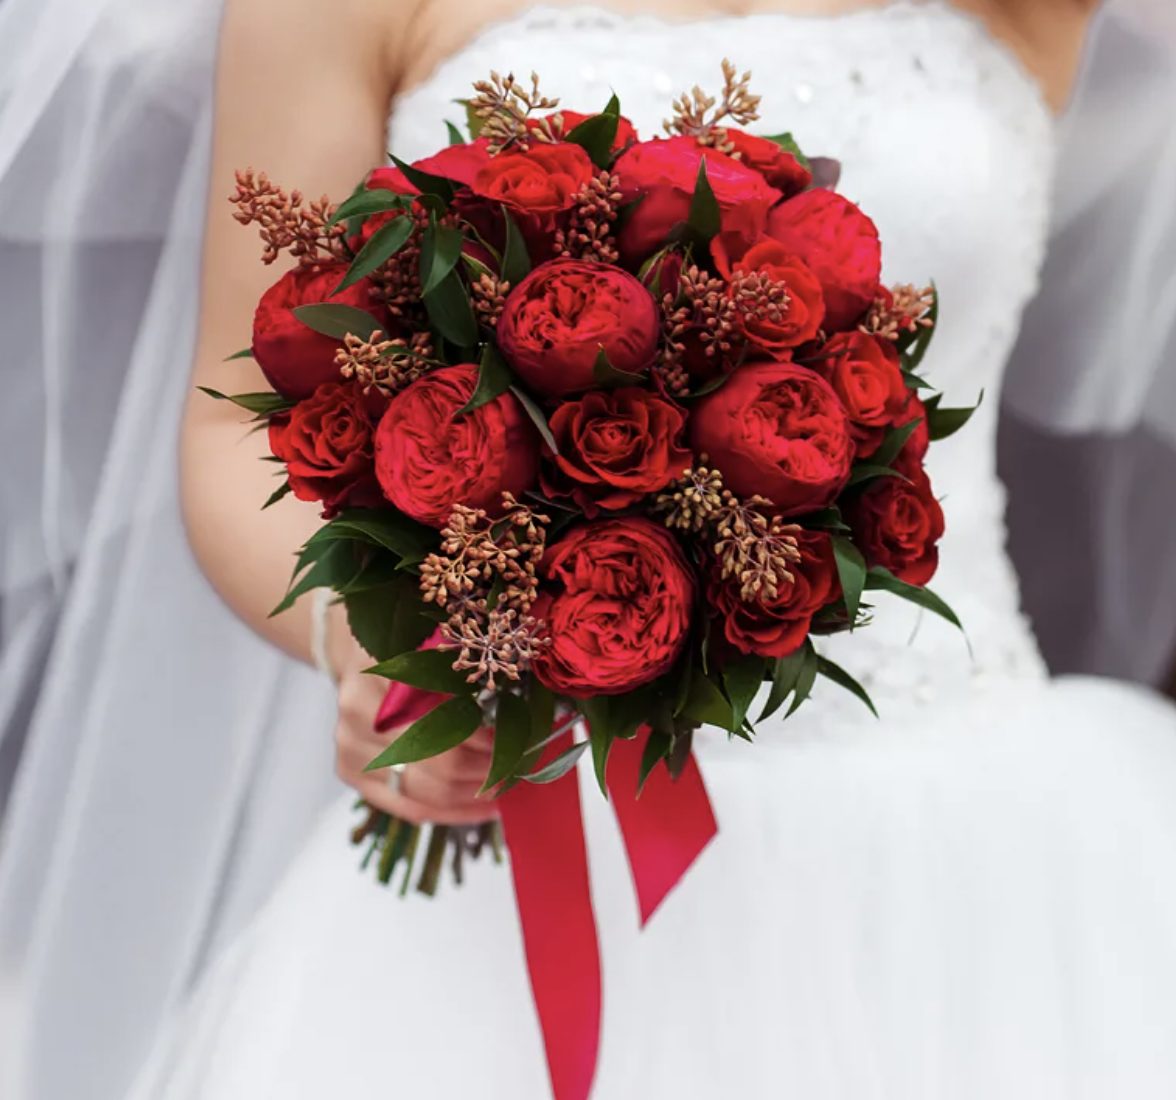 Букет невесты из красных роз, альстромерии и ягод хиперикума